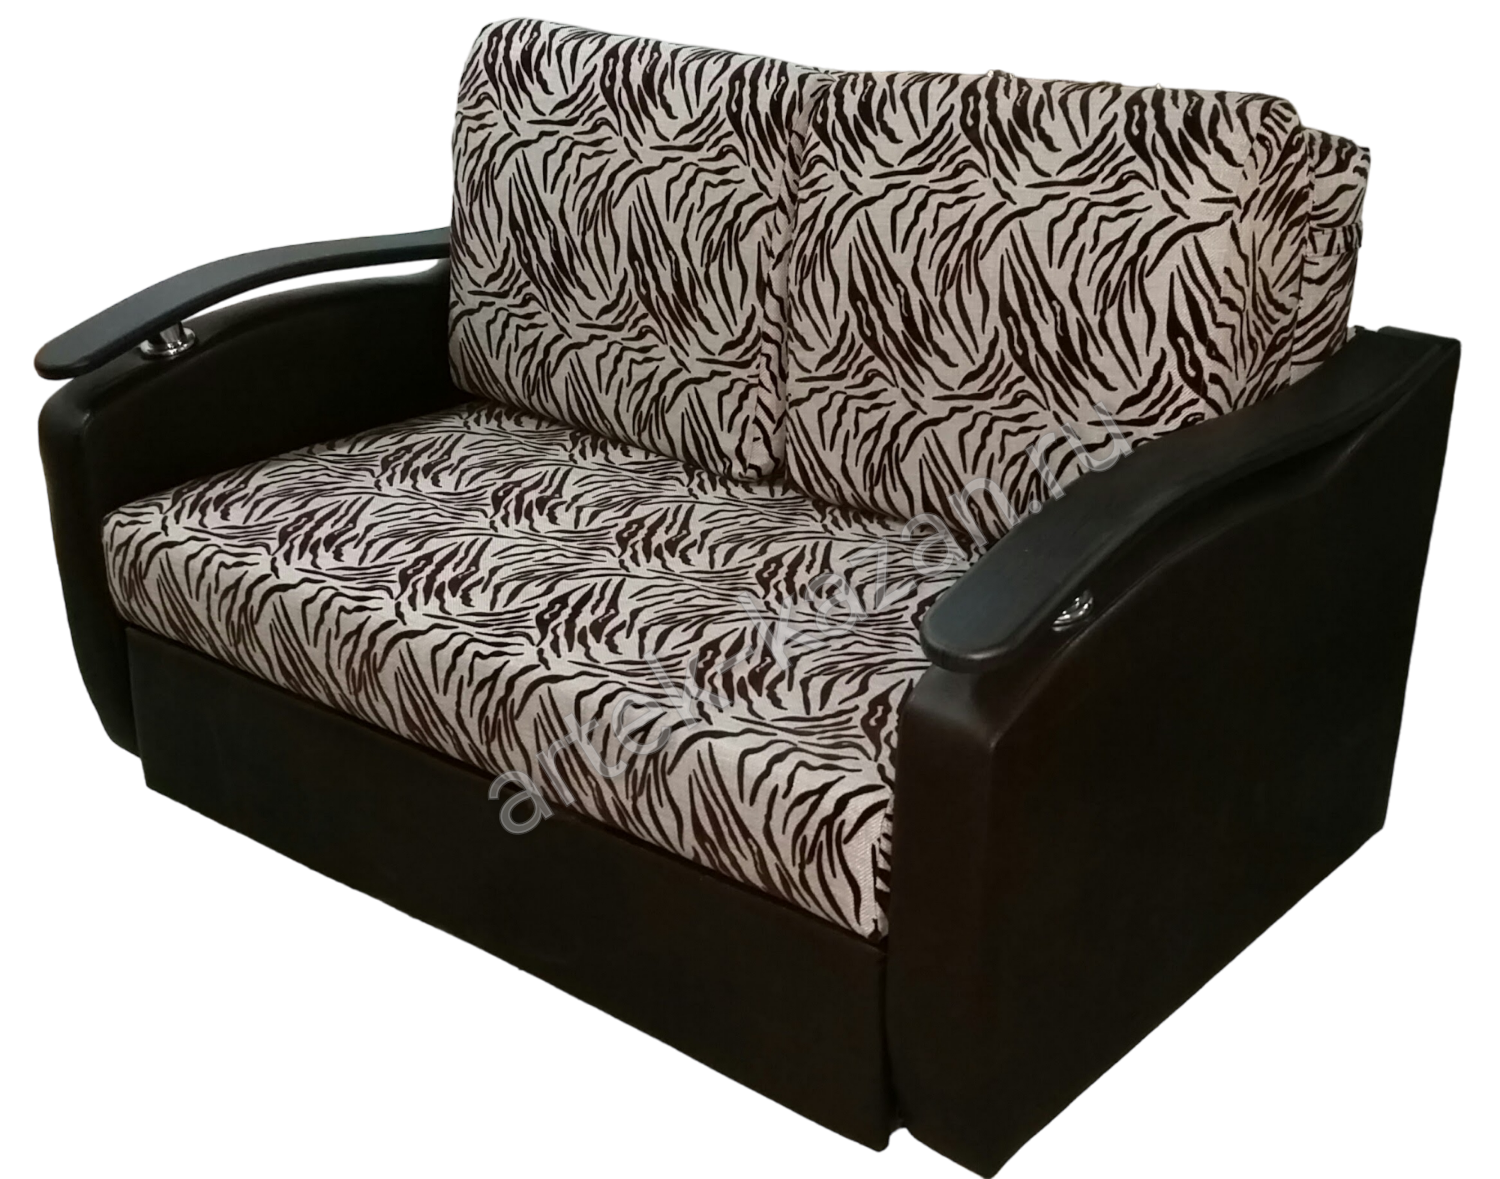 Мини диван на выкатном механизме Миник фото № 14. Купить недорогой диван по низкой цене от производителя можно у нас.